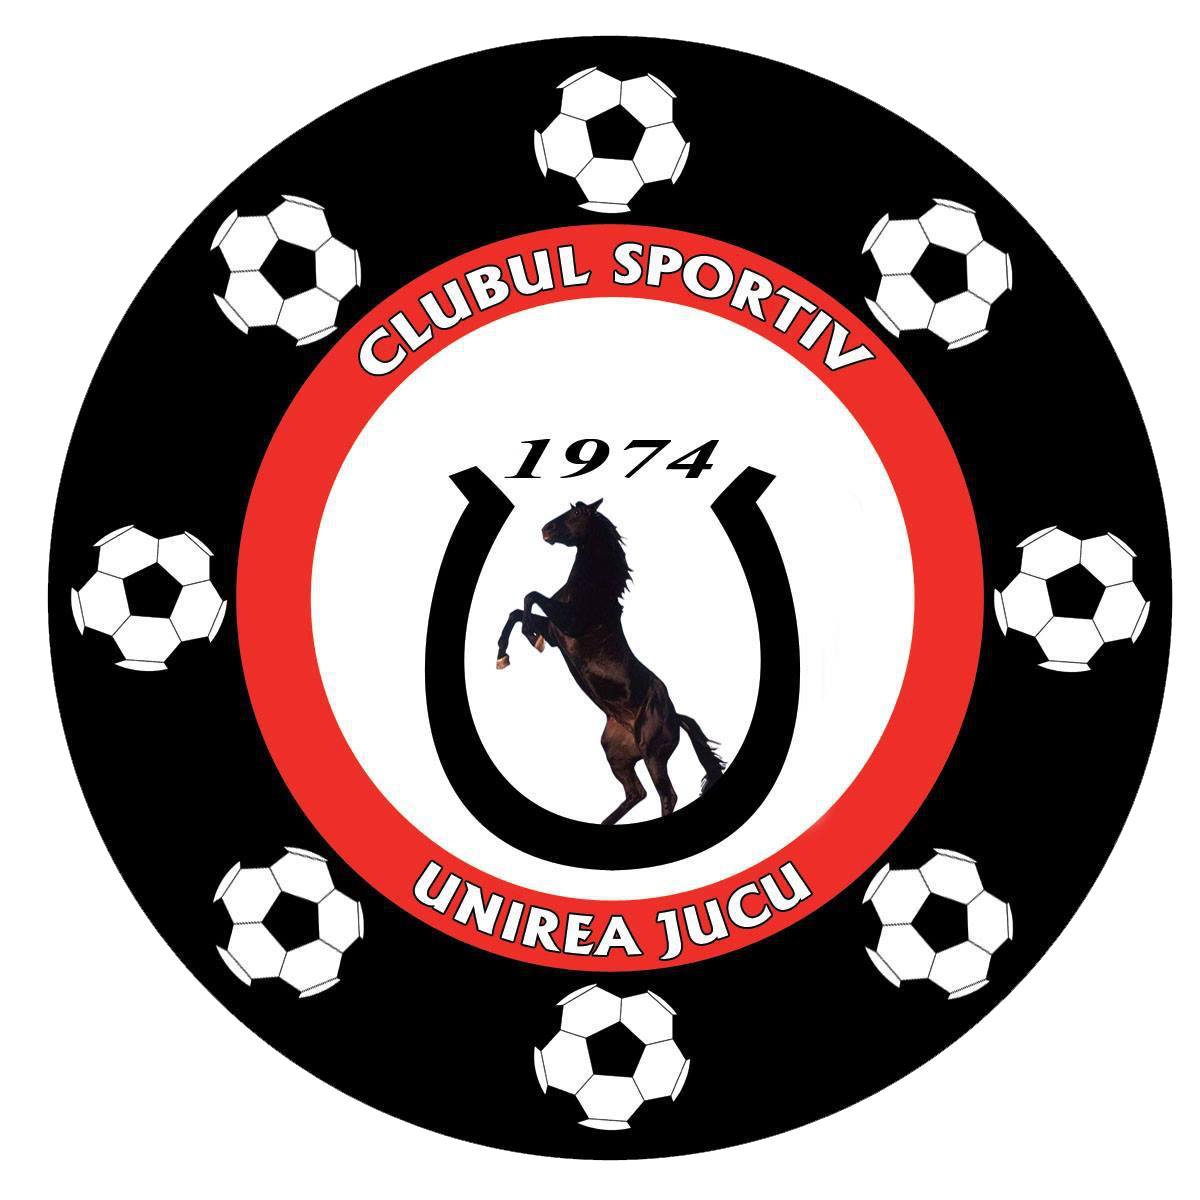 Unirea Jucu logo